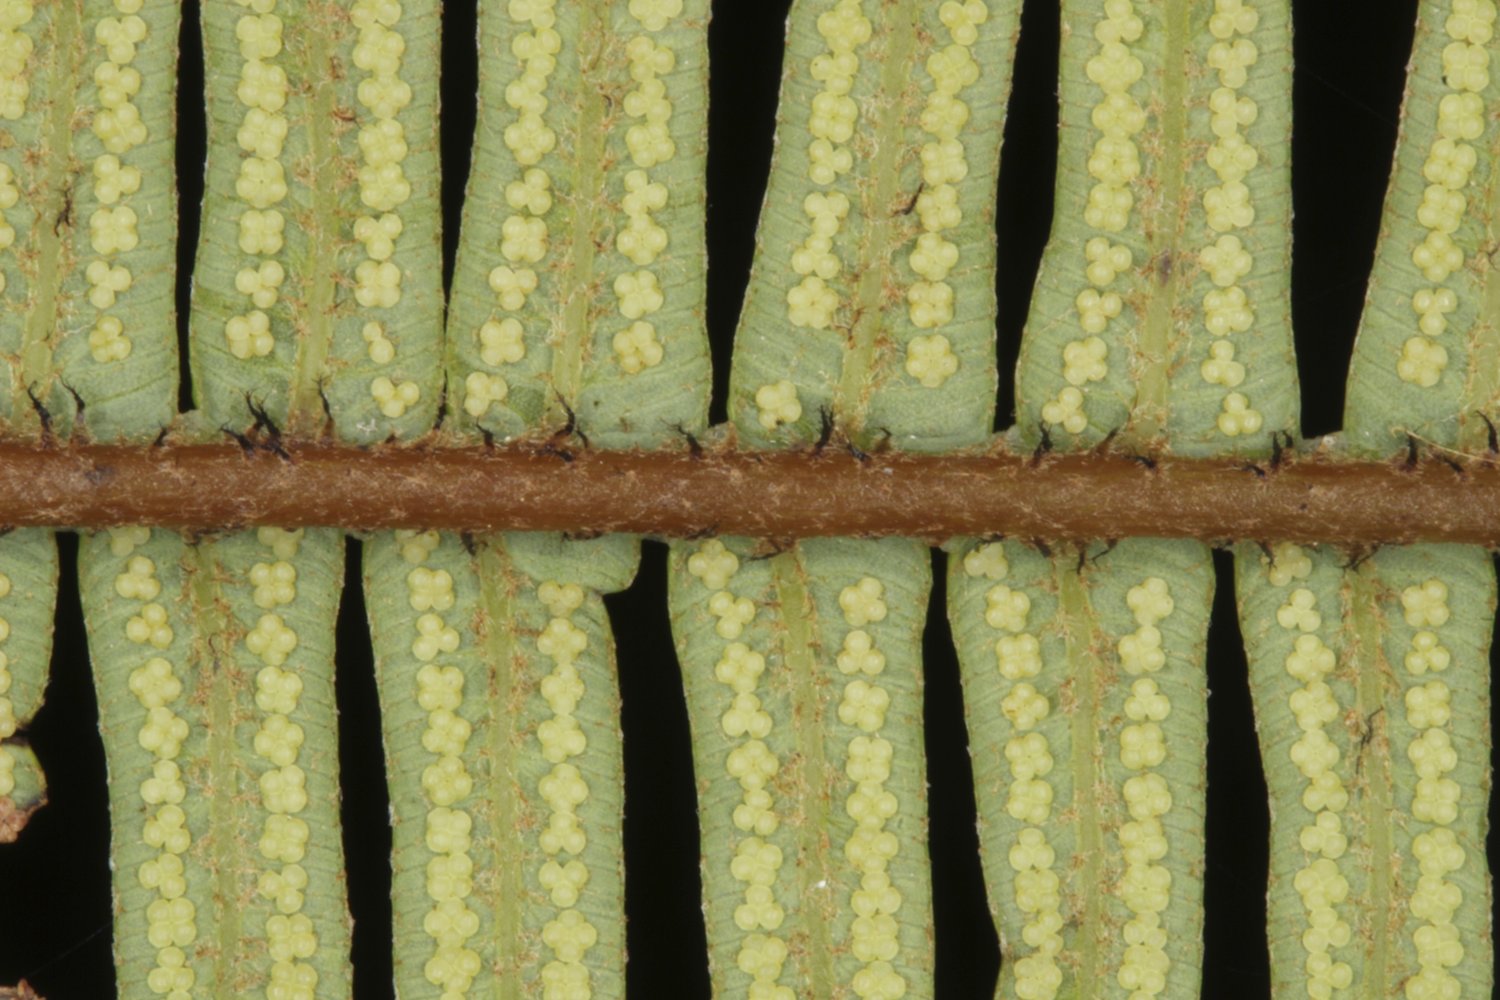 Sticherus nigropaleaceus